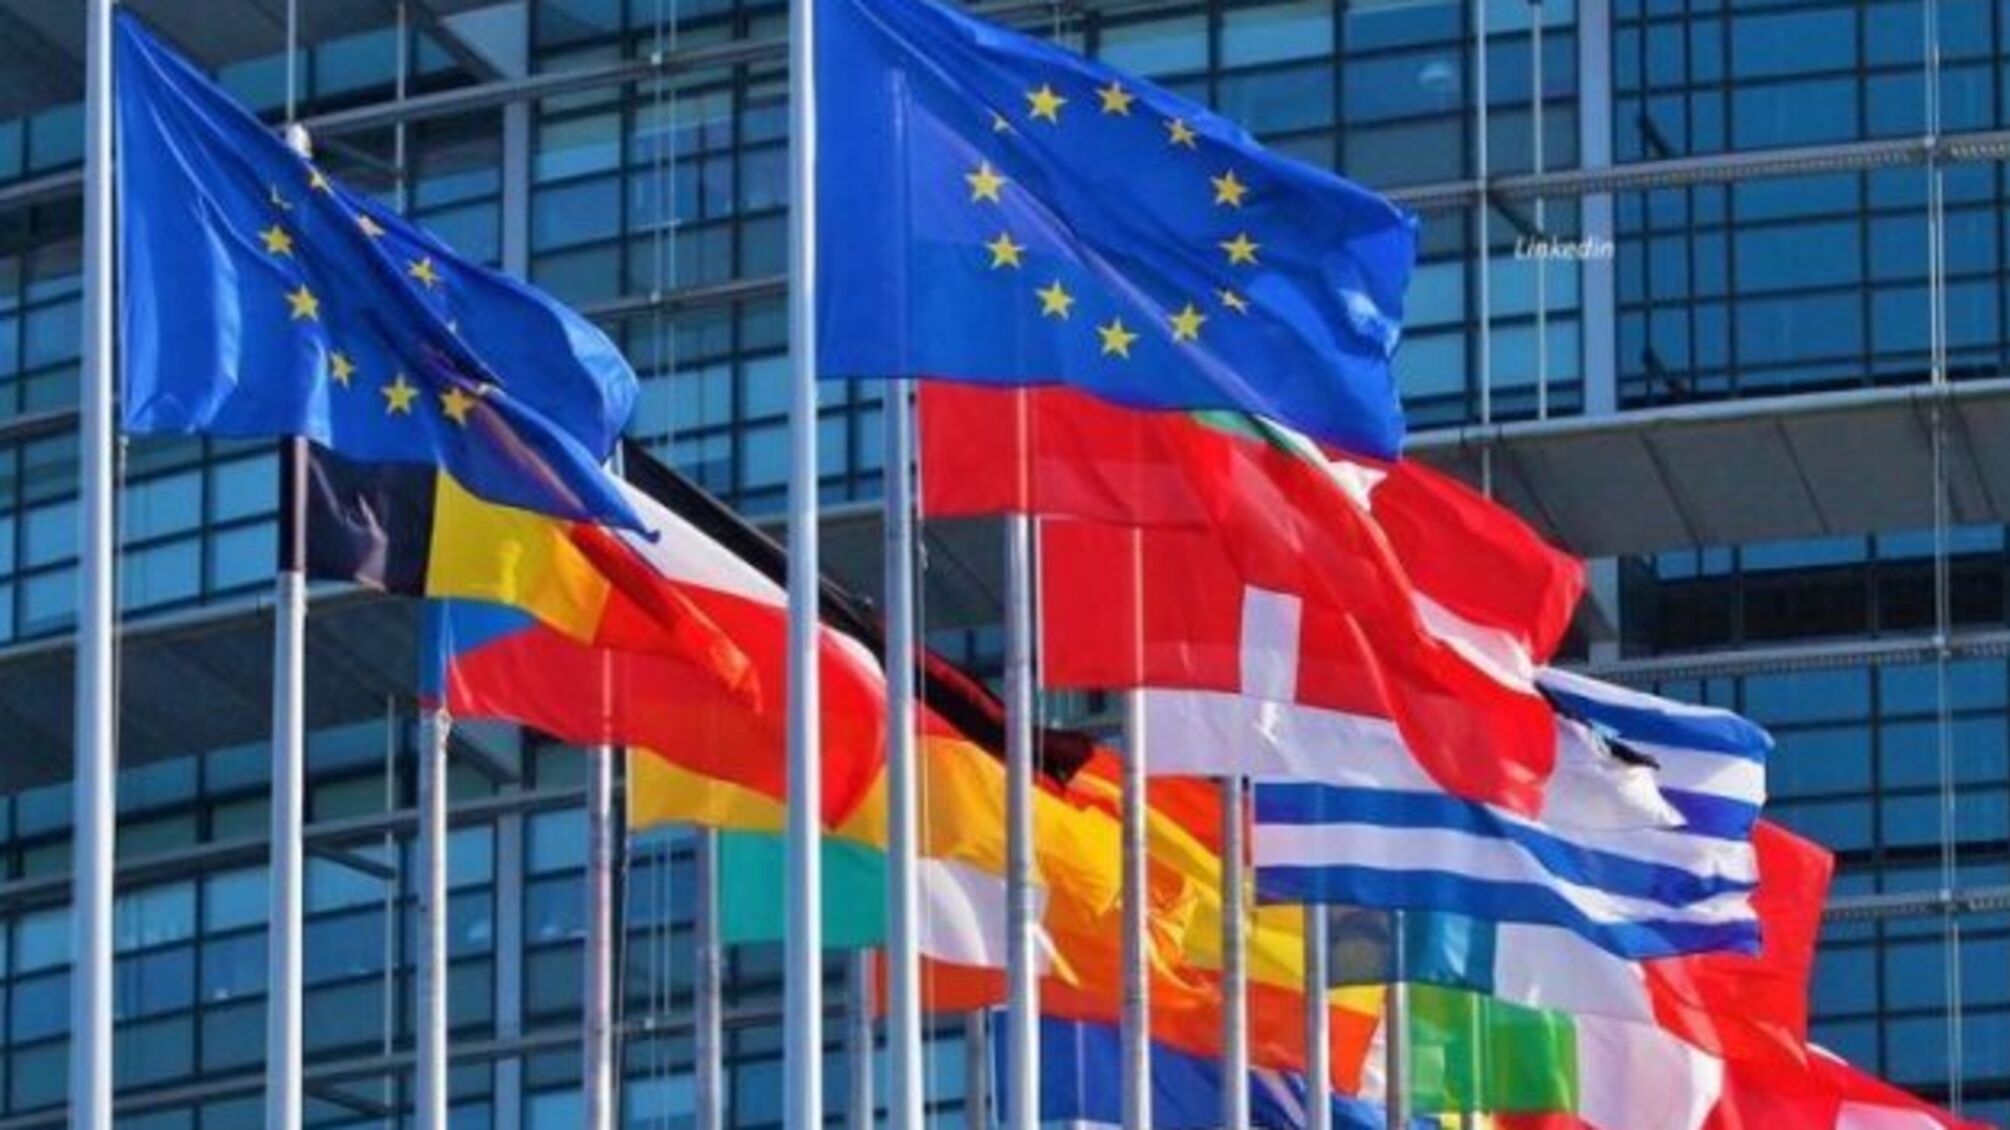 Допомога ЄС допоможе Україні відновити фінансову стабільність – посол Ченцов